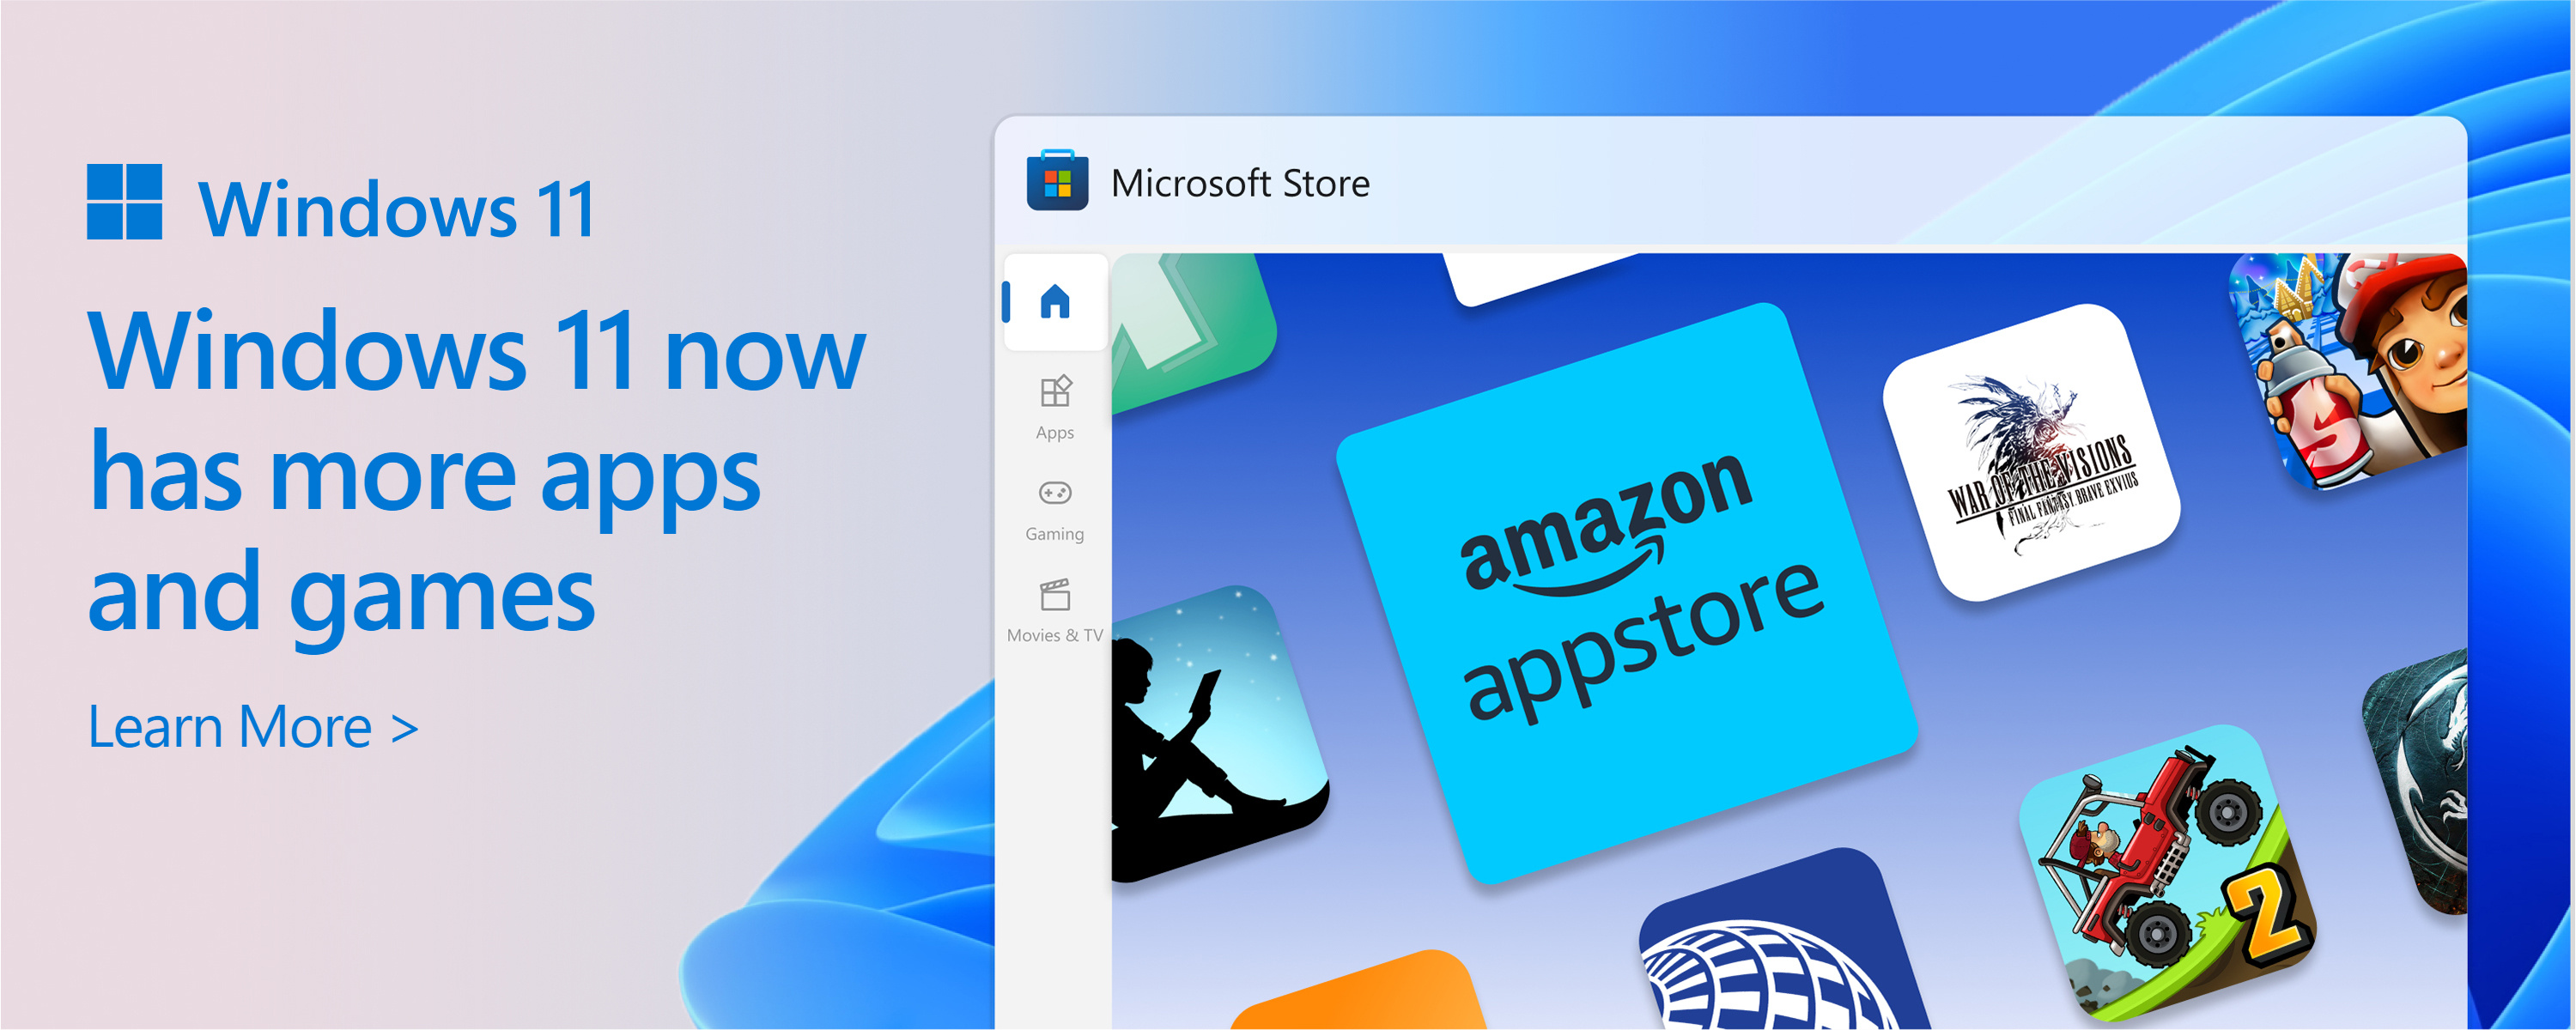 Captură de ecran a Microsoft Store cu textul: Catalogul Microsoft Store este în creștere. Windows 11 vă oferă mai multe dintre aplicațiile și jocurile pe care le doriți și de care aveți nevoie.